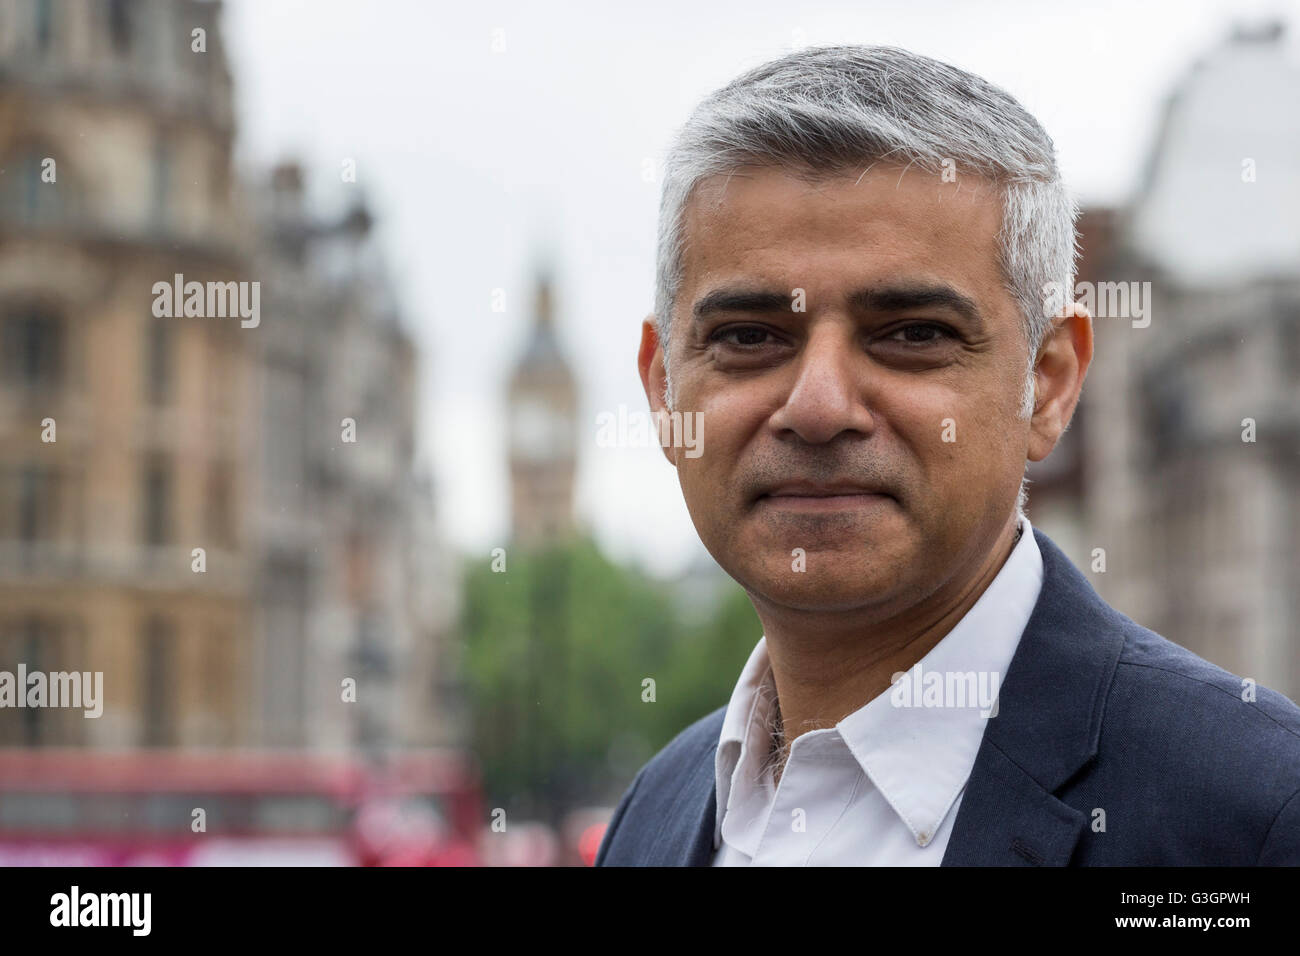 London, UK. 12. Juni 2016. Sadiq Khan, Bürgermeister von London, britischer Politiker und Mitglied der Labour Party. Im Hintergrund Das Londoner Wahrzeichen Big Ben. Stockfoto